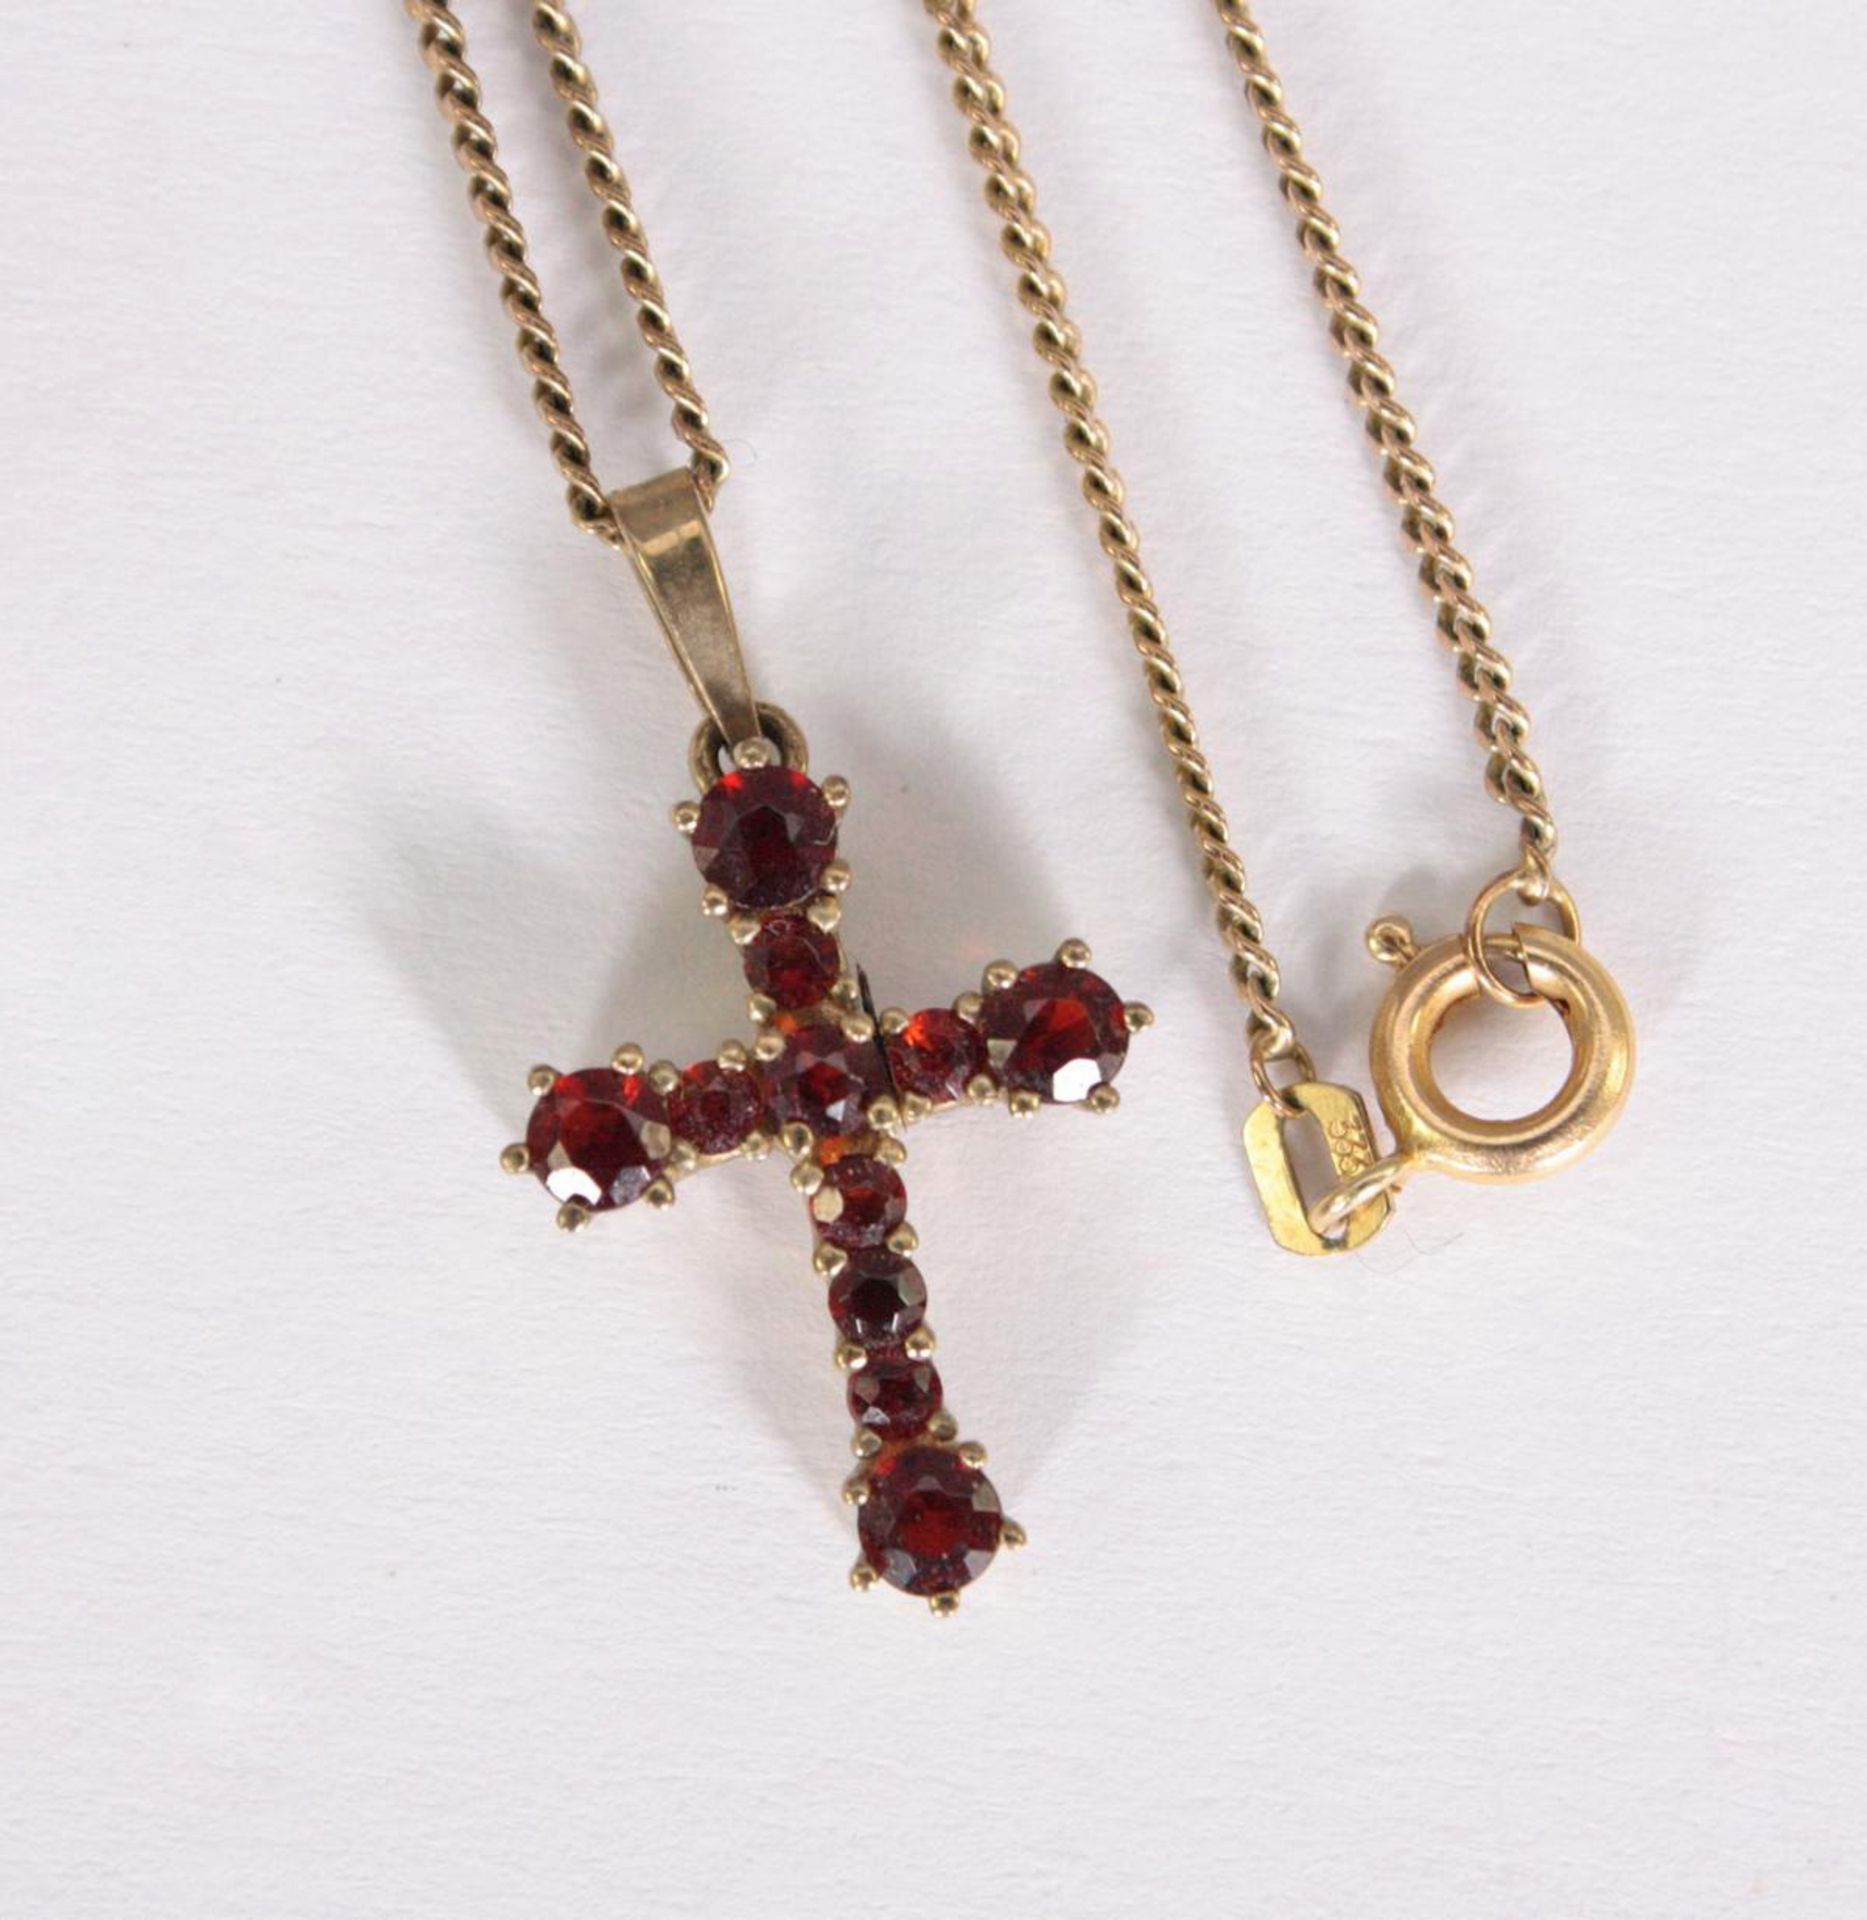 Halskette mit Kreuzanhänger, 8 Karat Gelbgold - Bild 4 aus 4